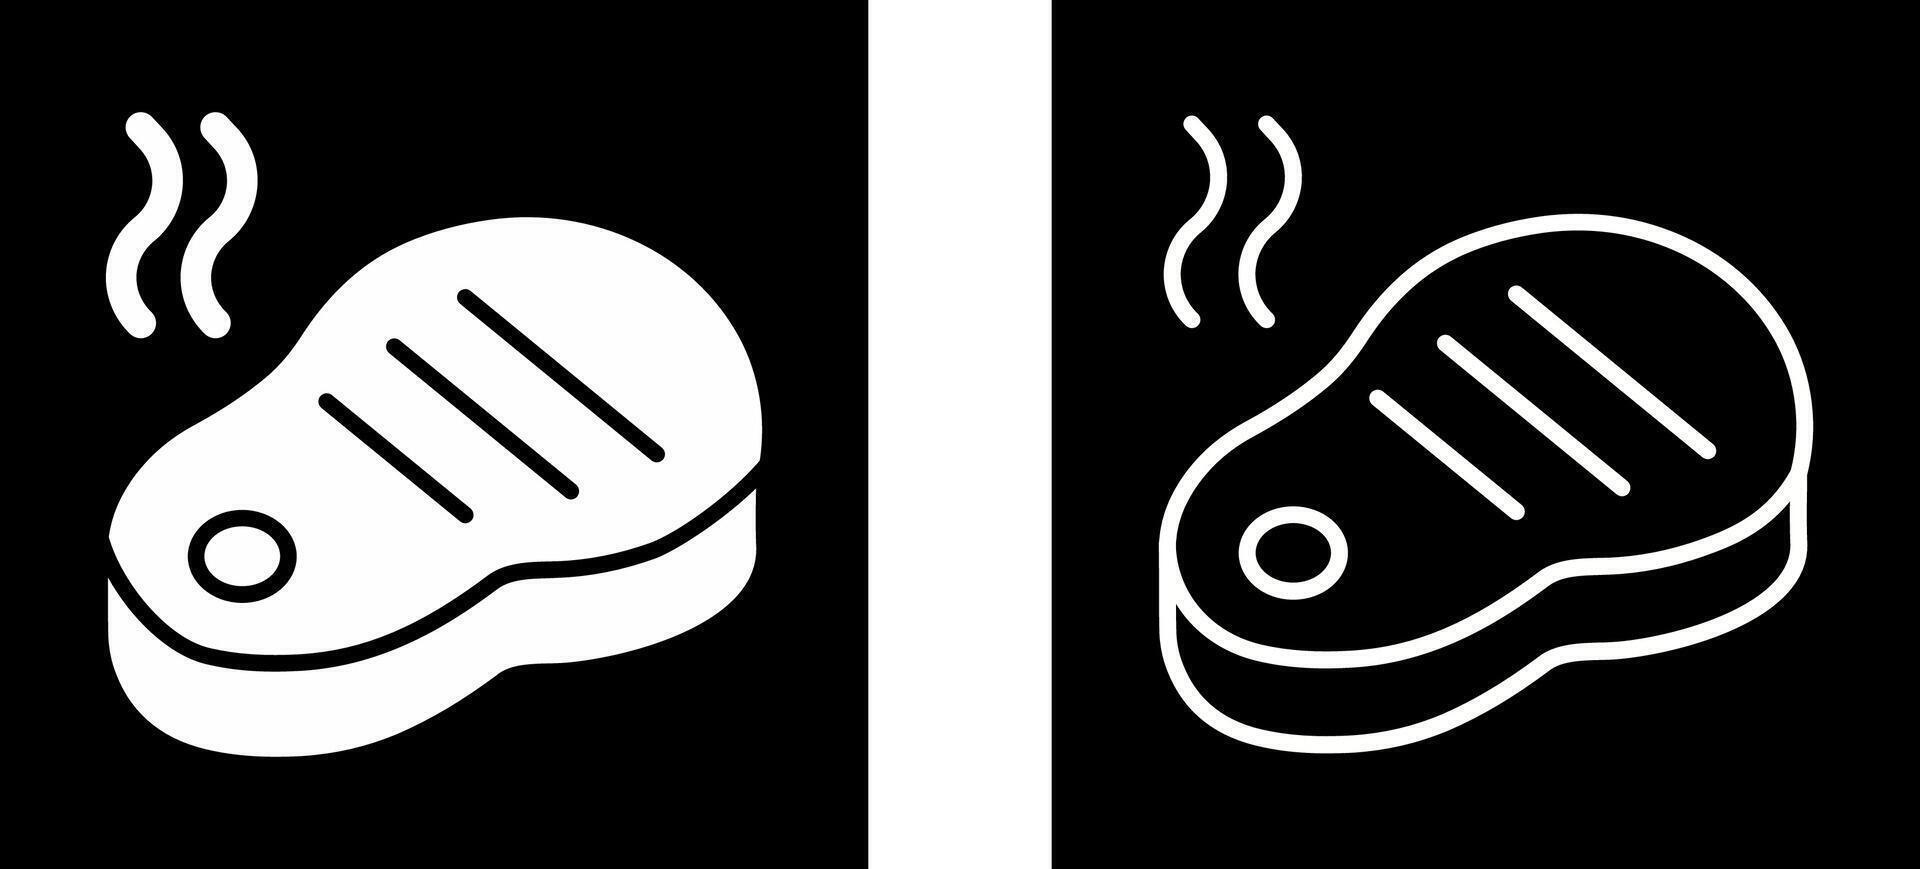 biefstuk vector pictogram